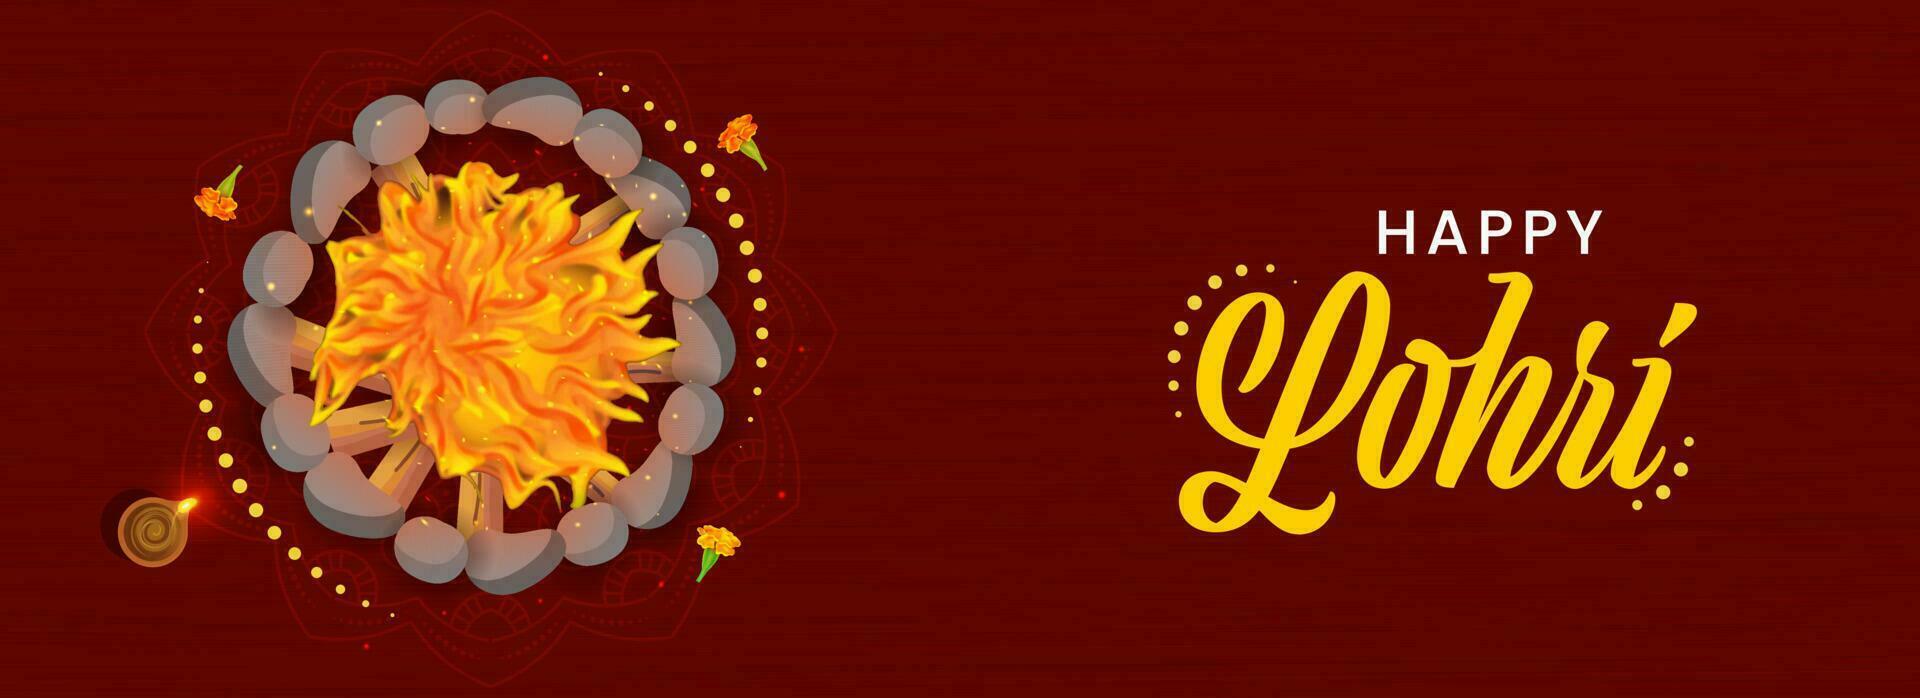 Lycklig lohri firande baner eller rubrik design med topp se av bål, belyst olja lampa och ringblomma blommor på mörk röd trä textur bakgrund. vektor